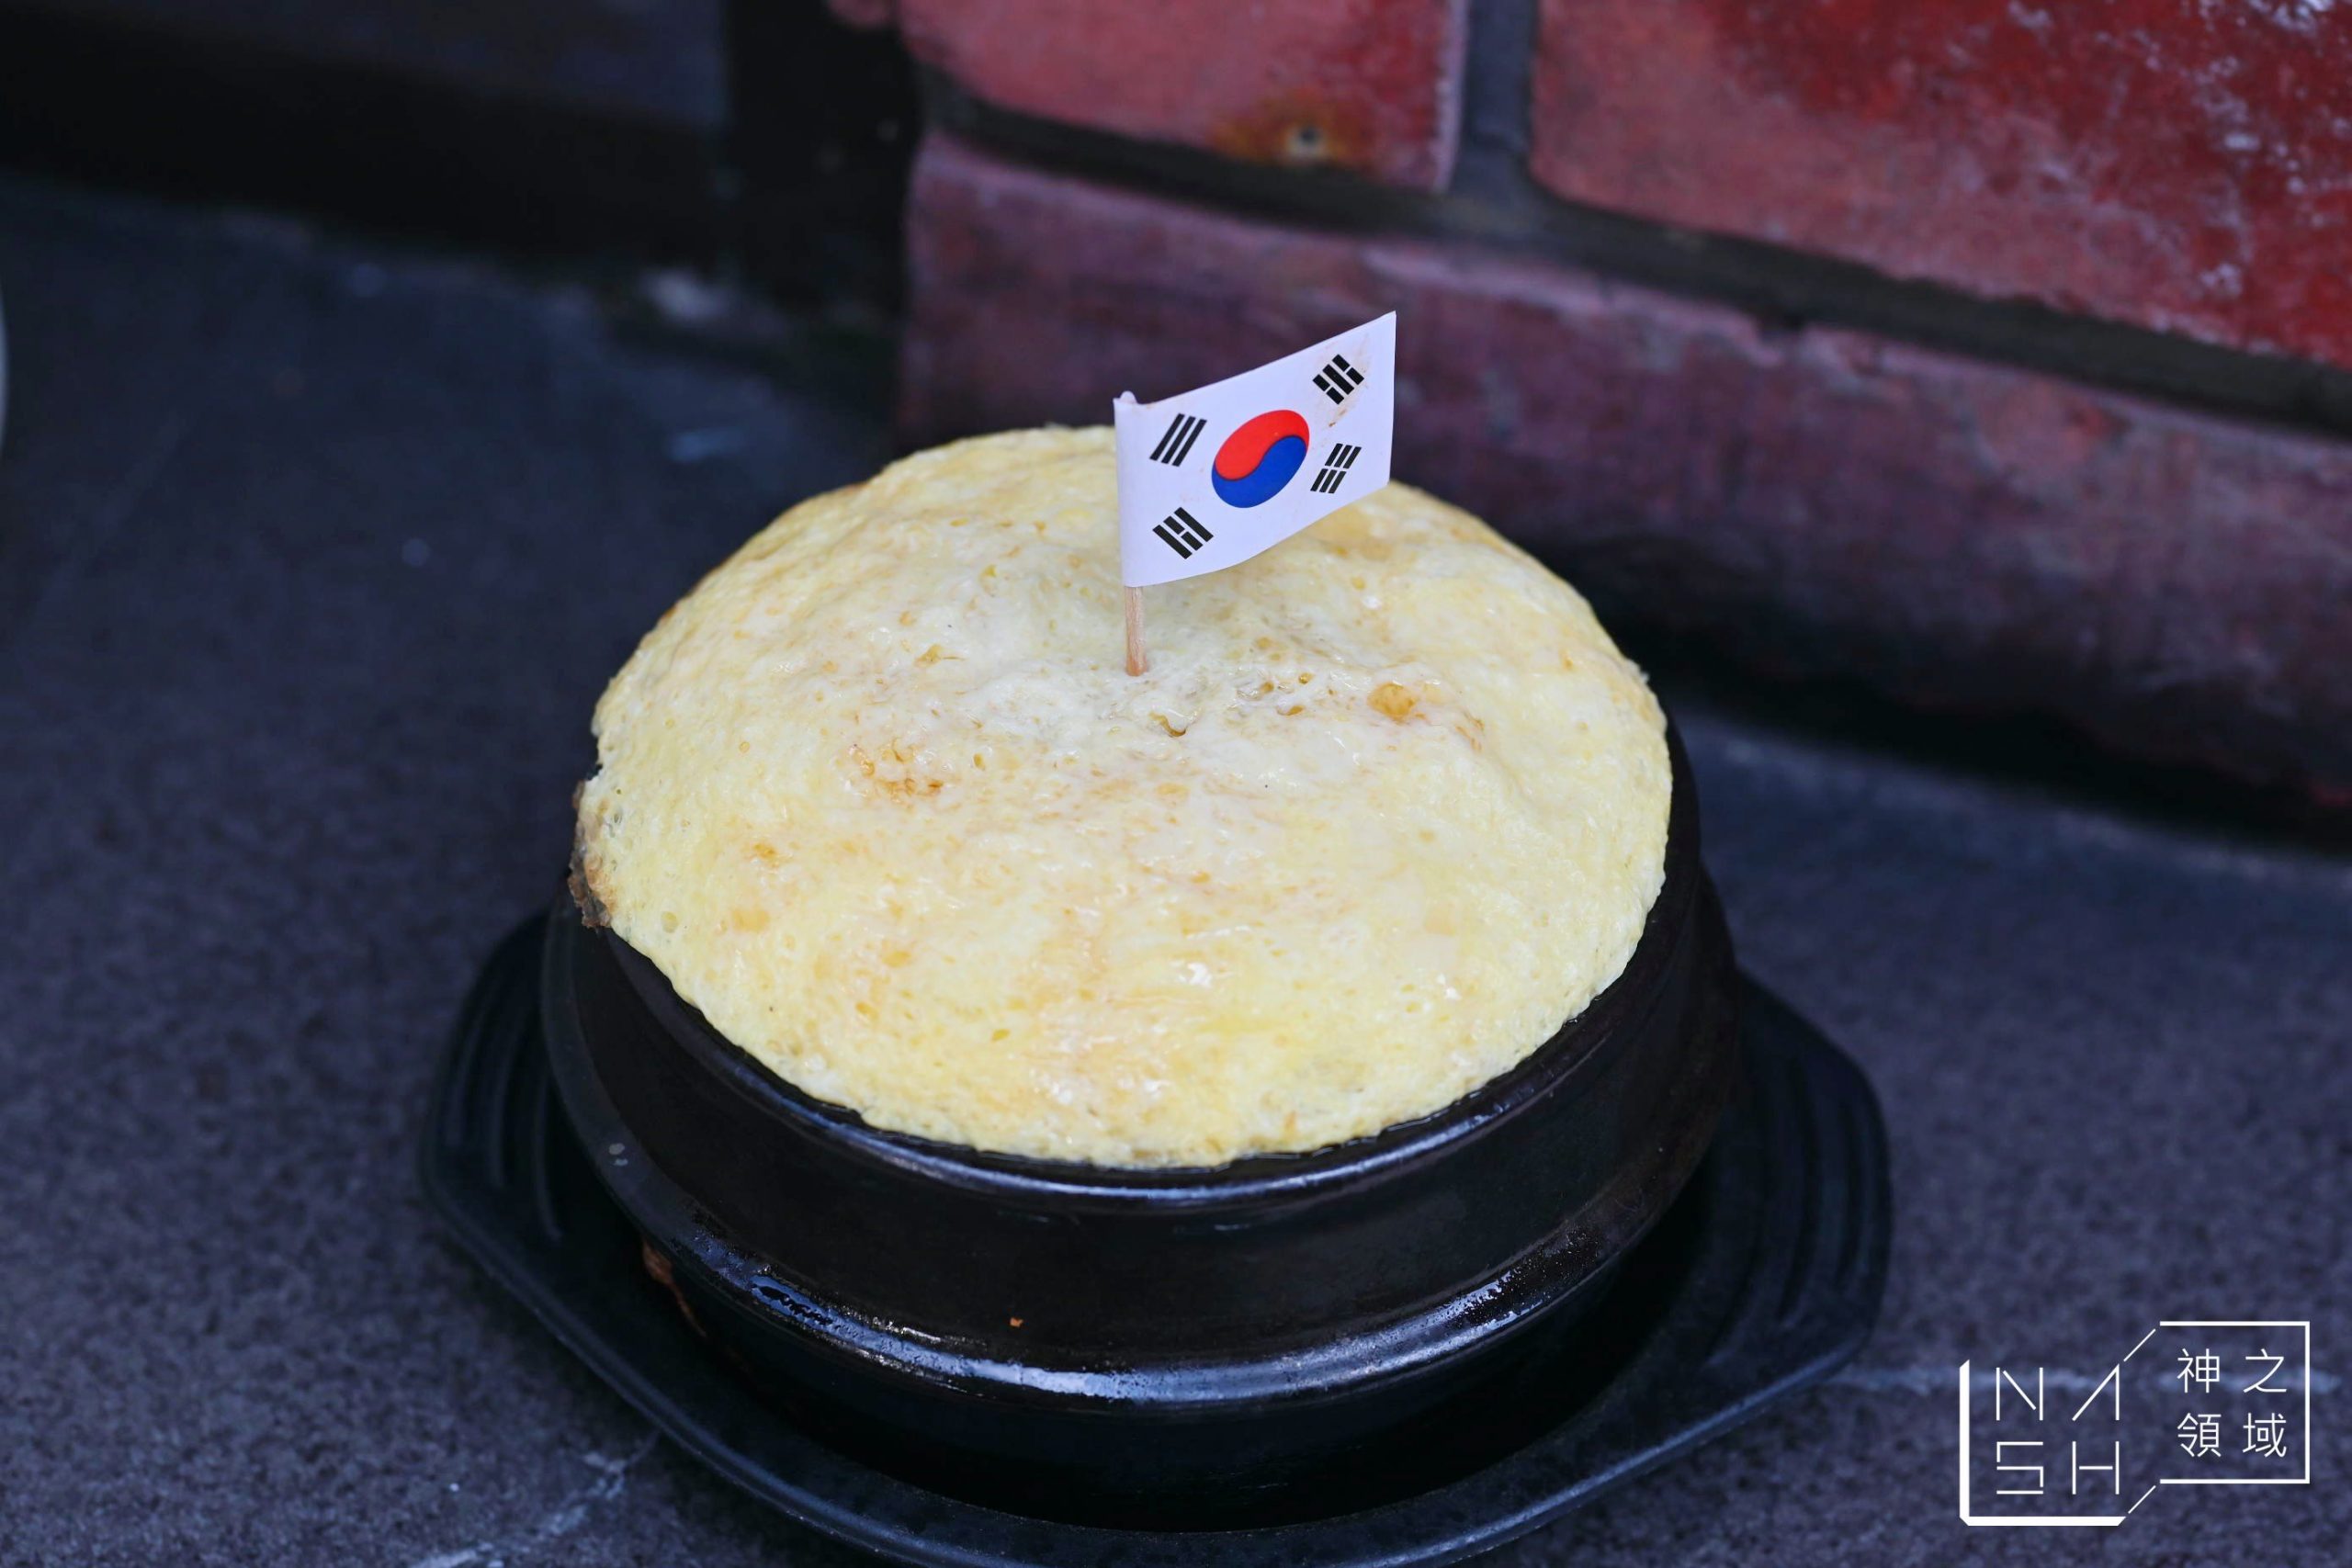 小班韓式料理,小班,台北韓式料理推薦,台北韓式料理